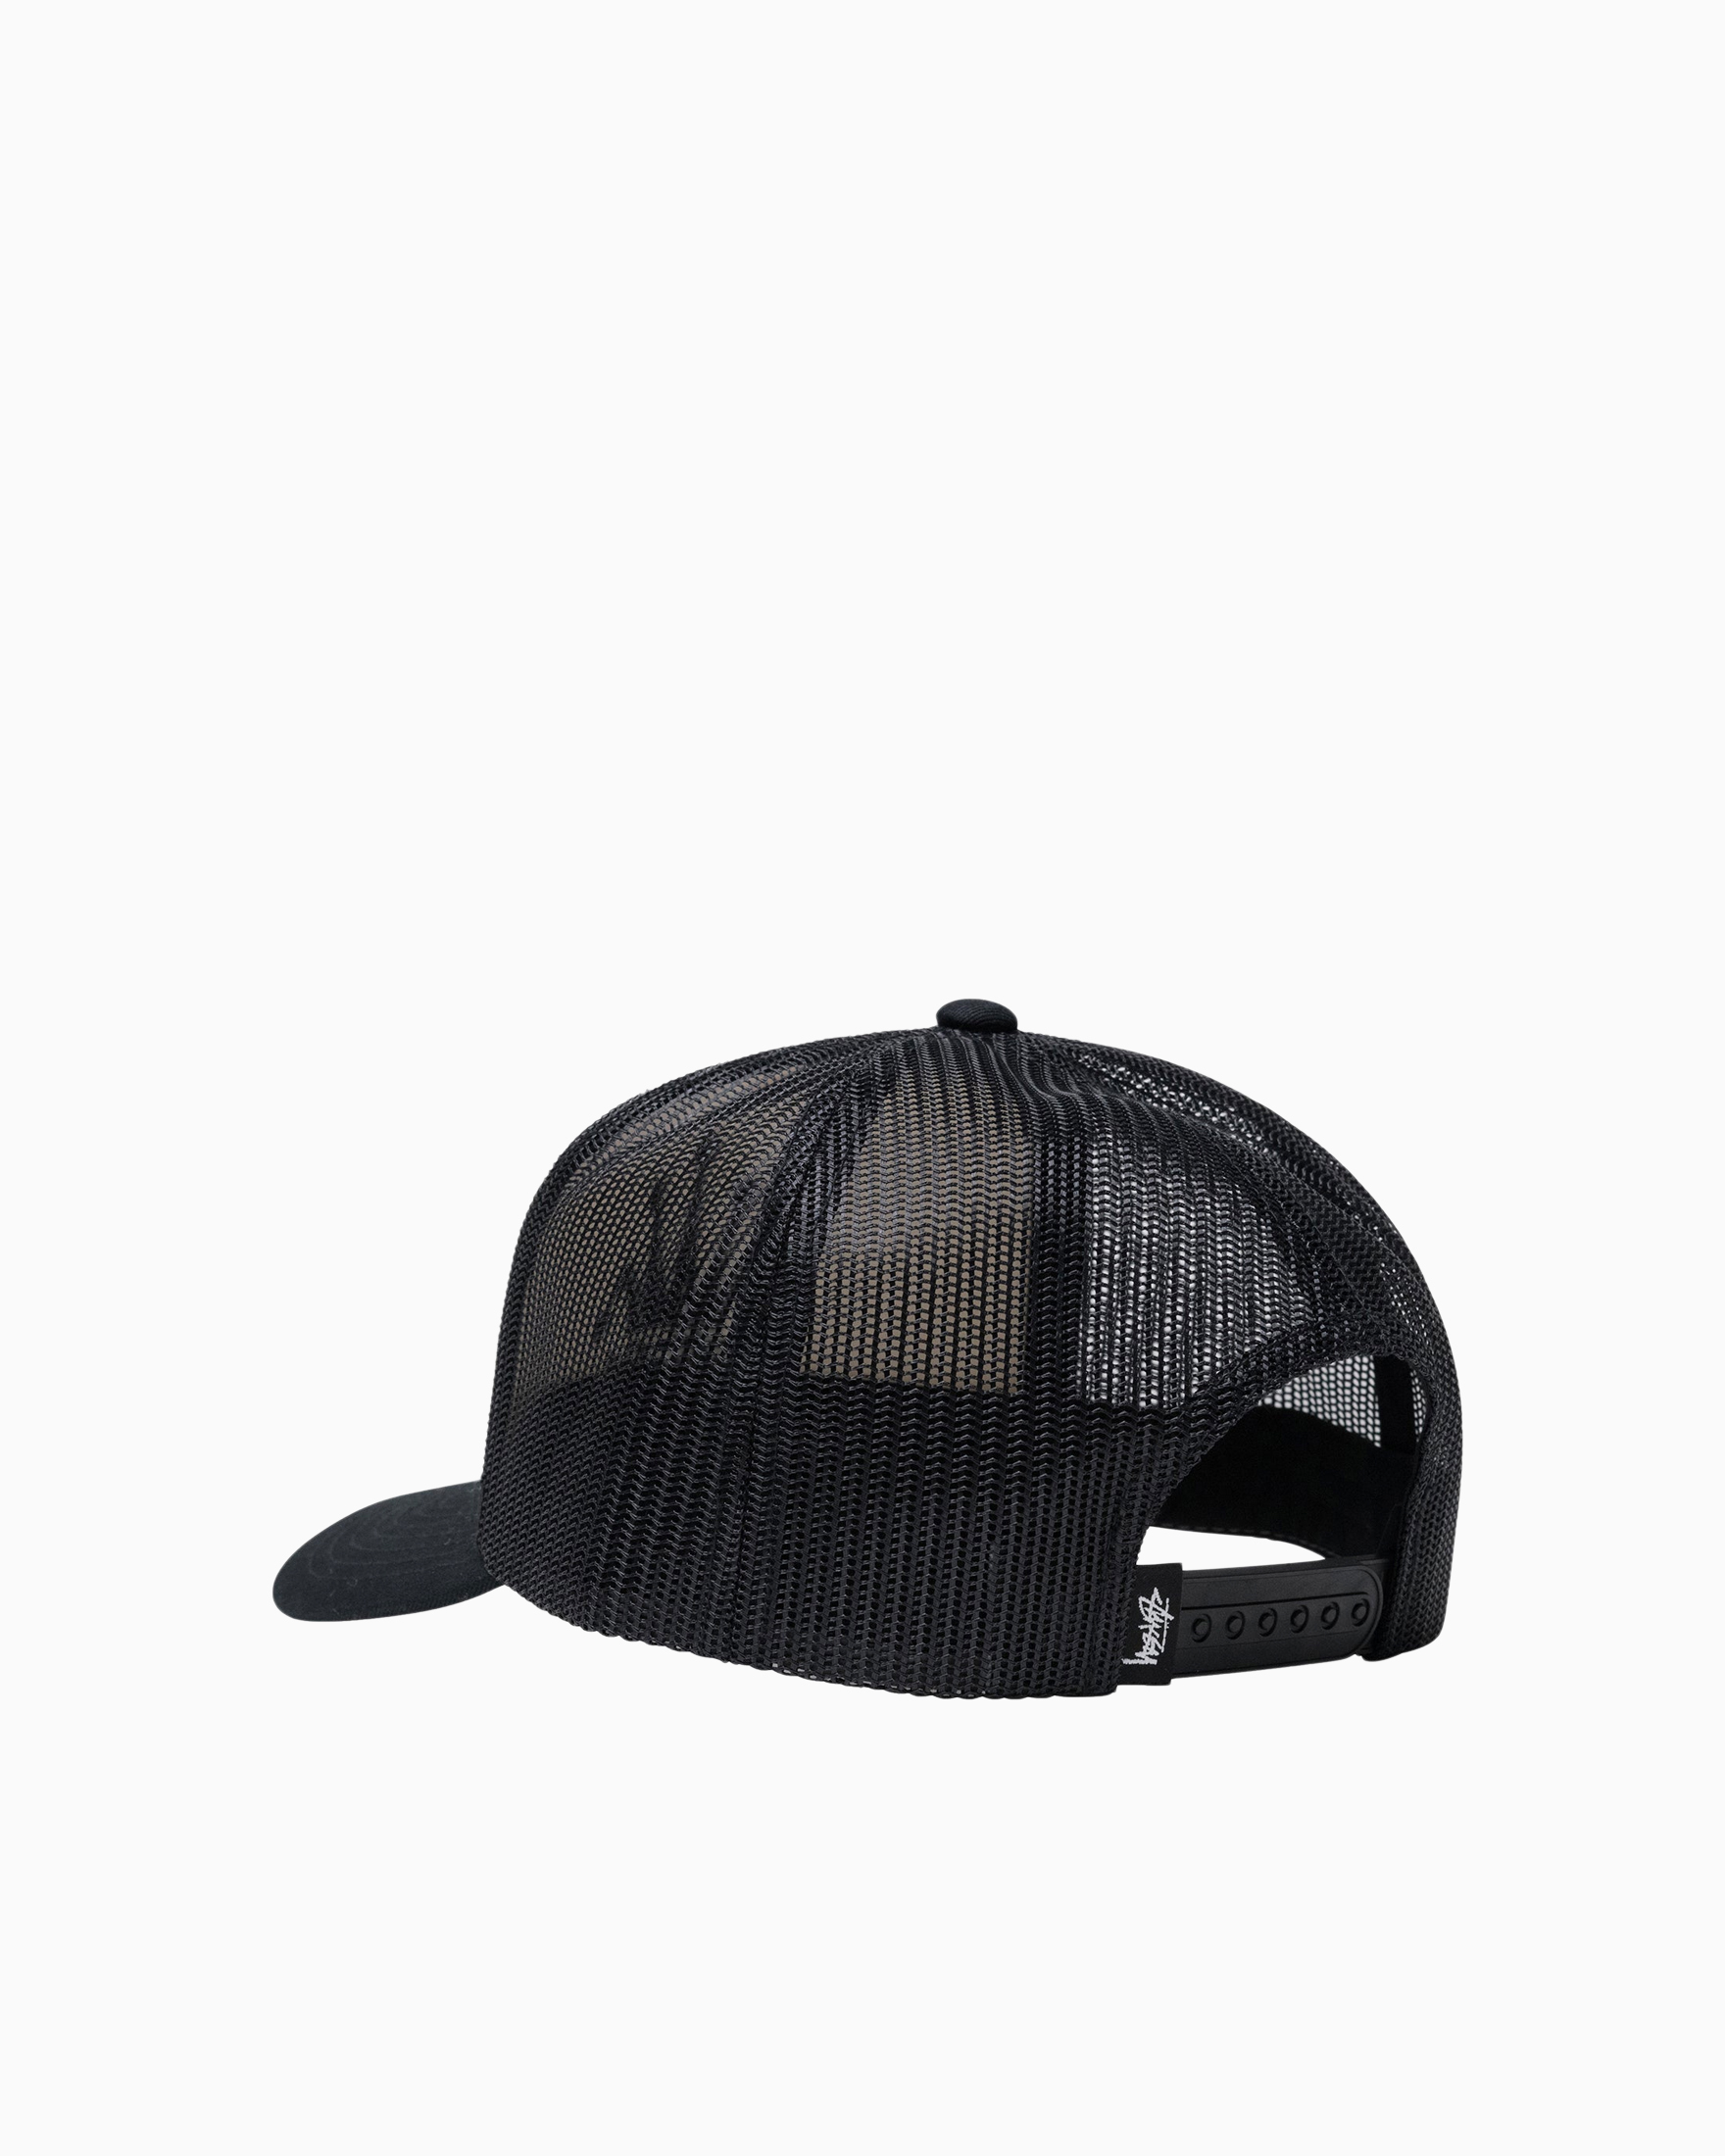 Crown Stock Trucker Cap Stussy Headwear Caps Black